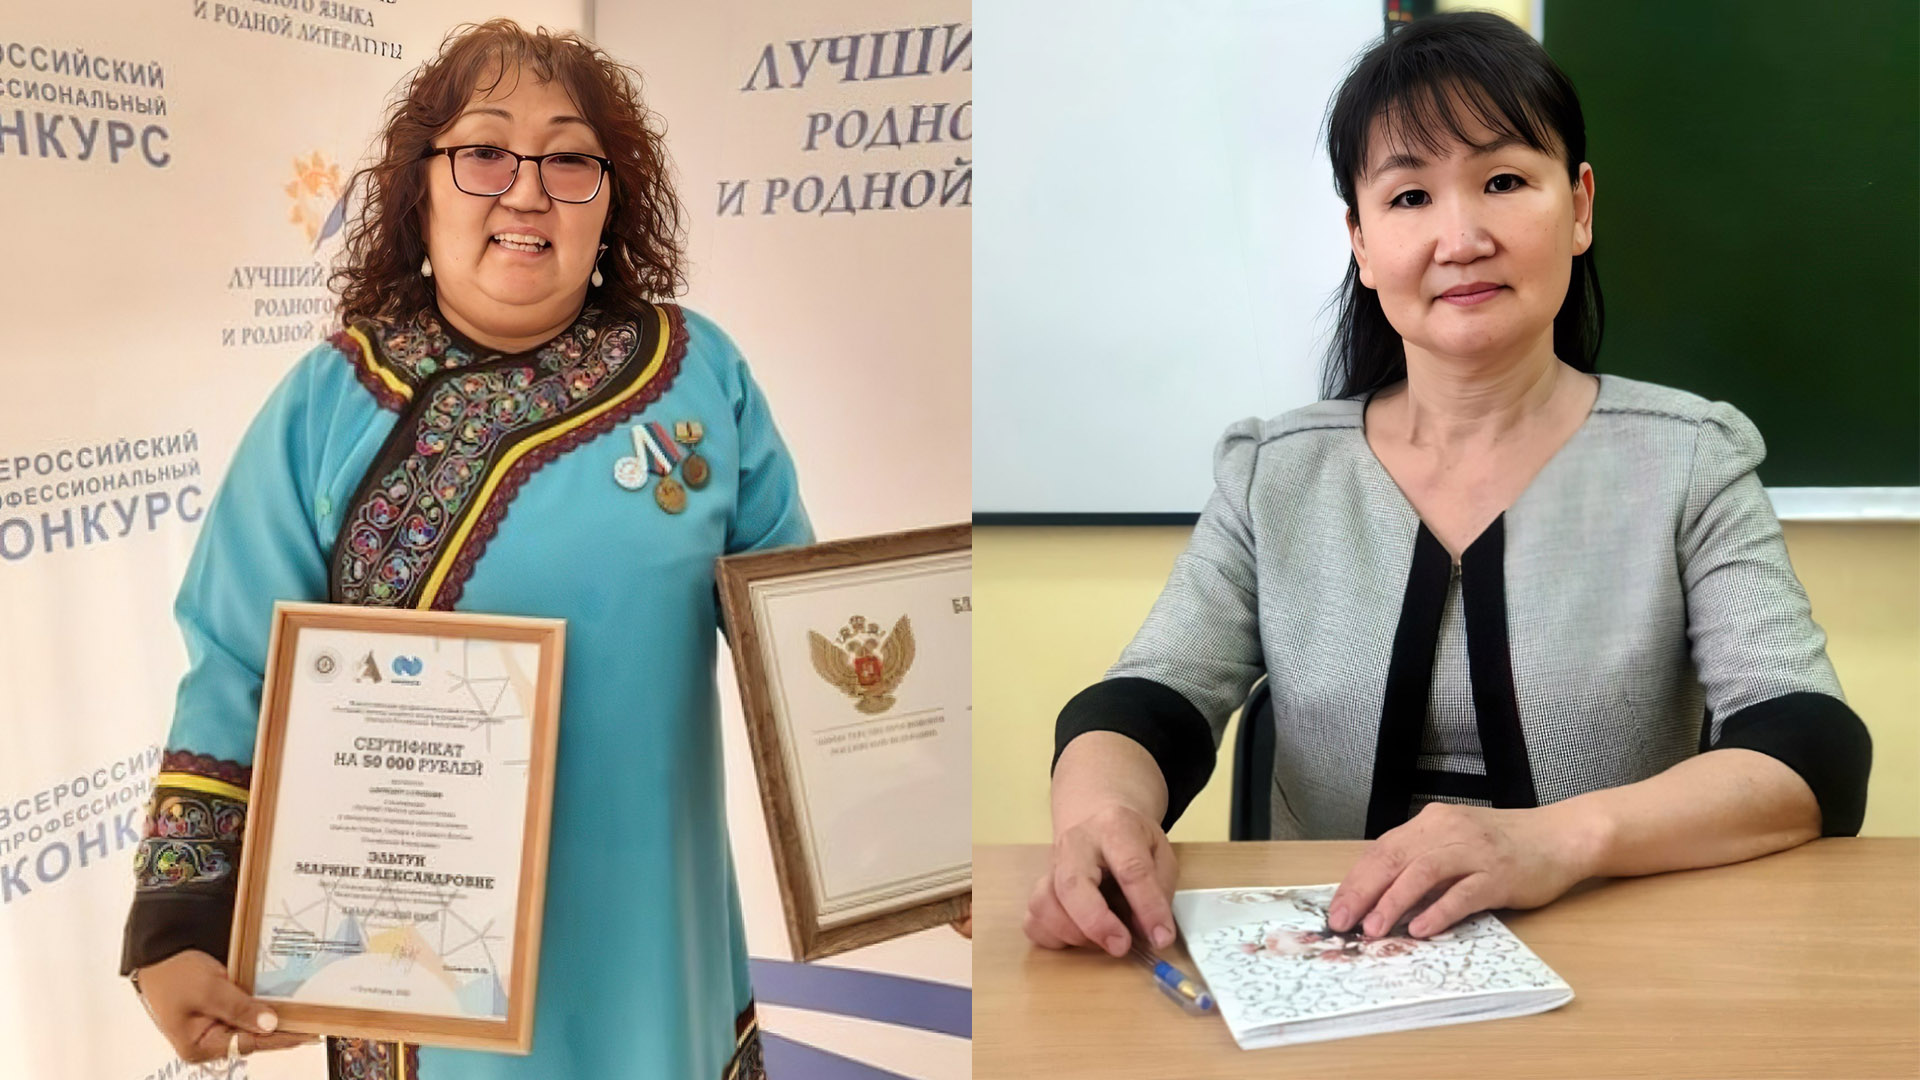 Работы учителей нанайского языка из села Бельго отмечены на всероссийском уровне